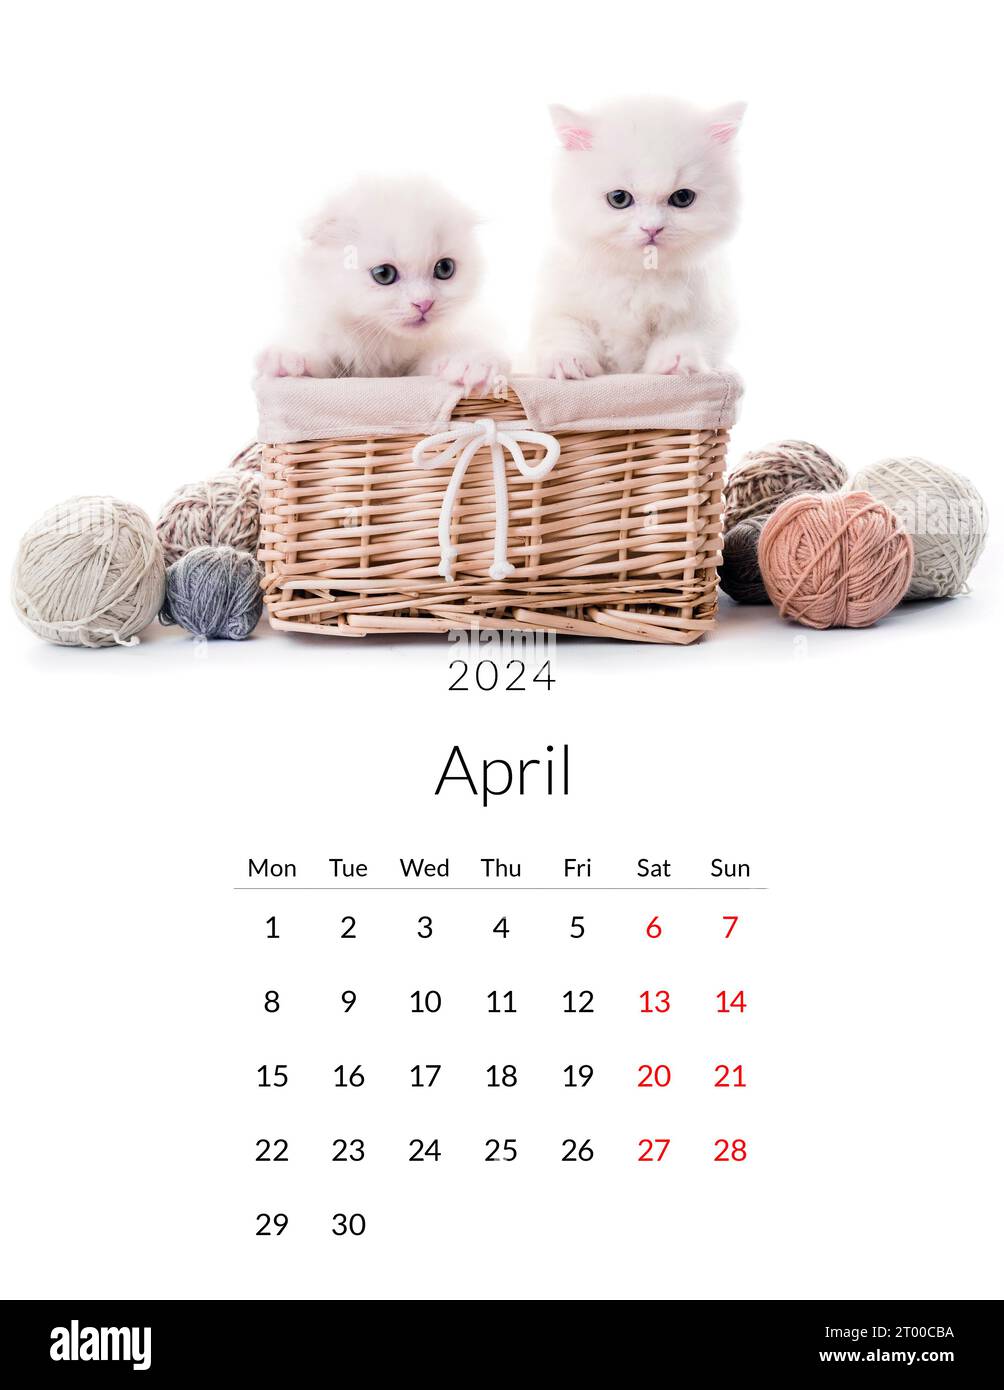 Aprile 2024 Calendario fotografico con gatti carini. Modello di